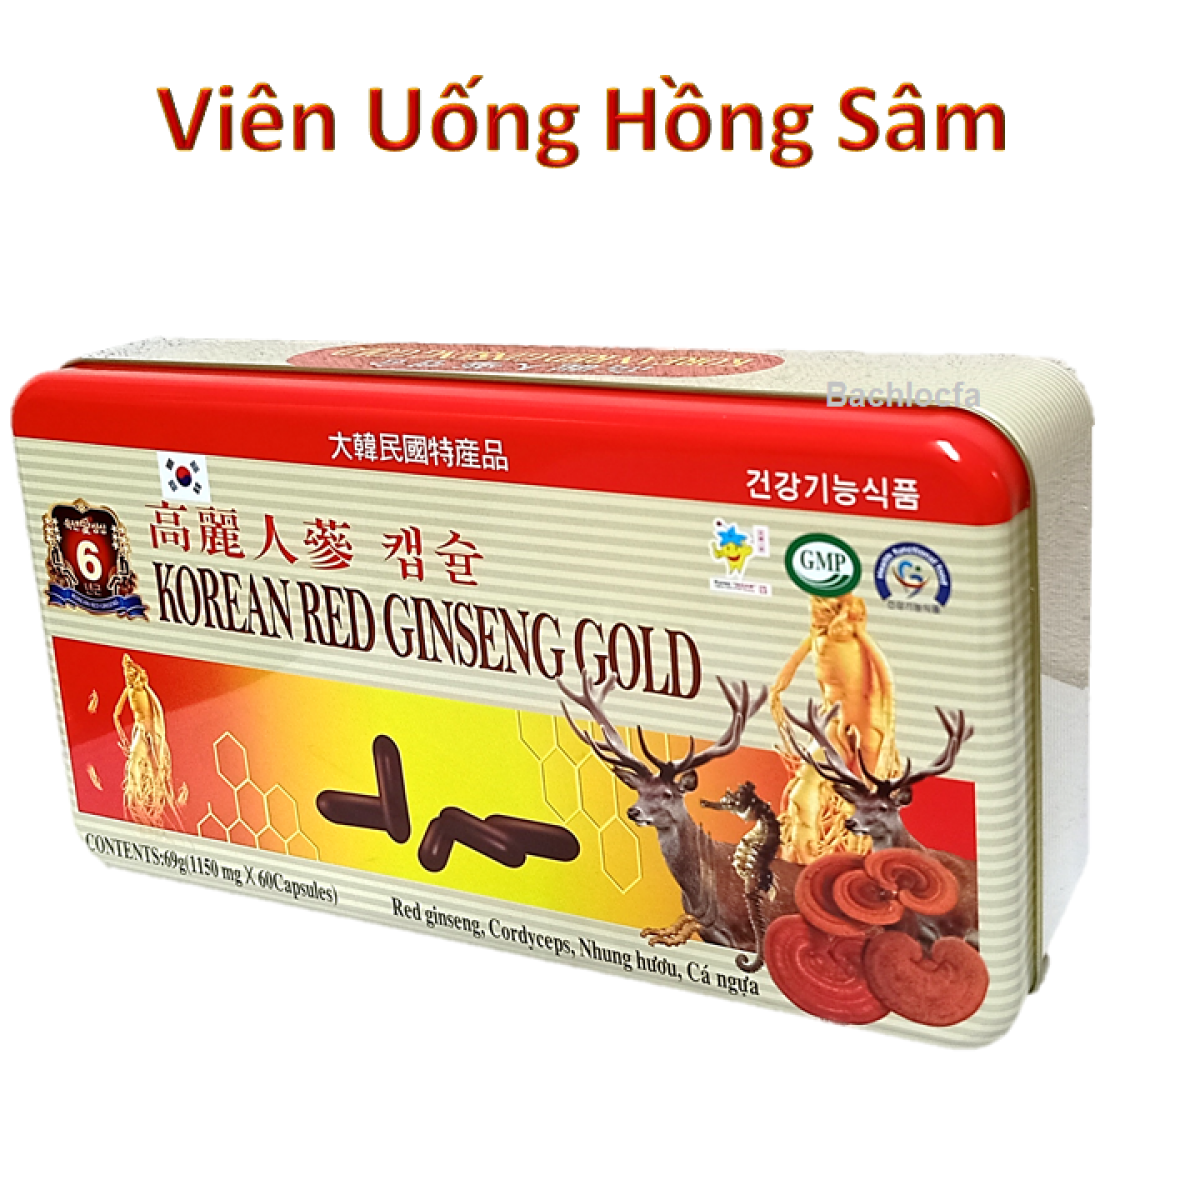 Viên đạm hồng sâm nhung hươu linh chi hàn quốc - korean red ginseng gold - ảnh sản phẩm 2